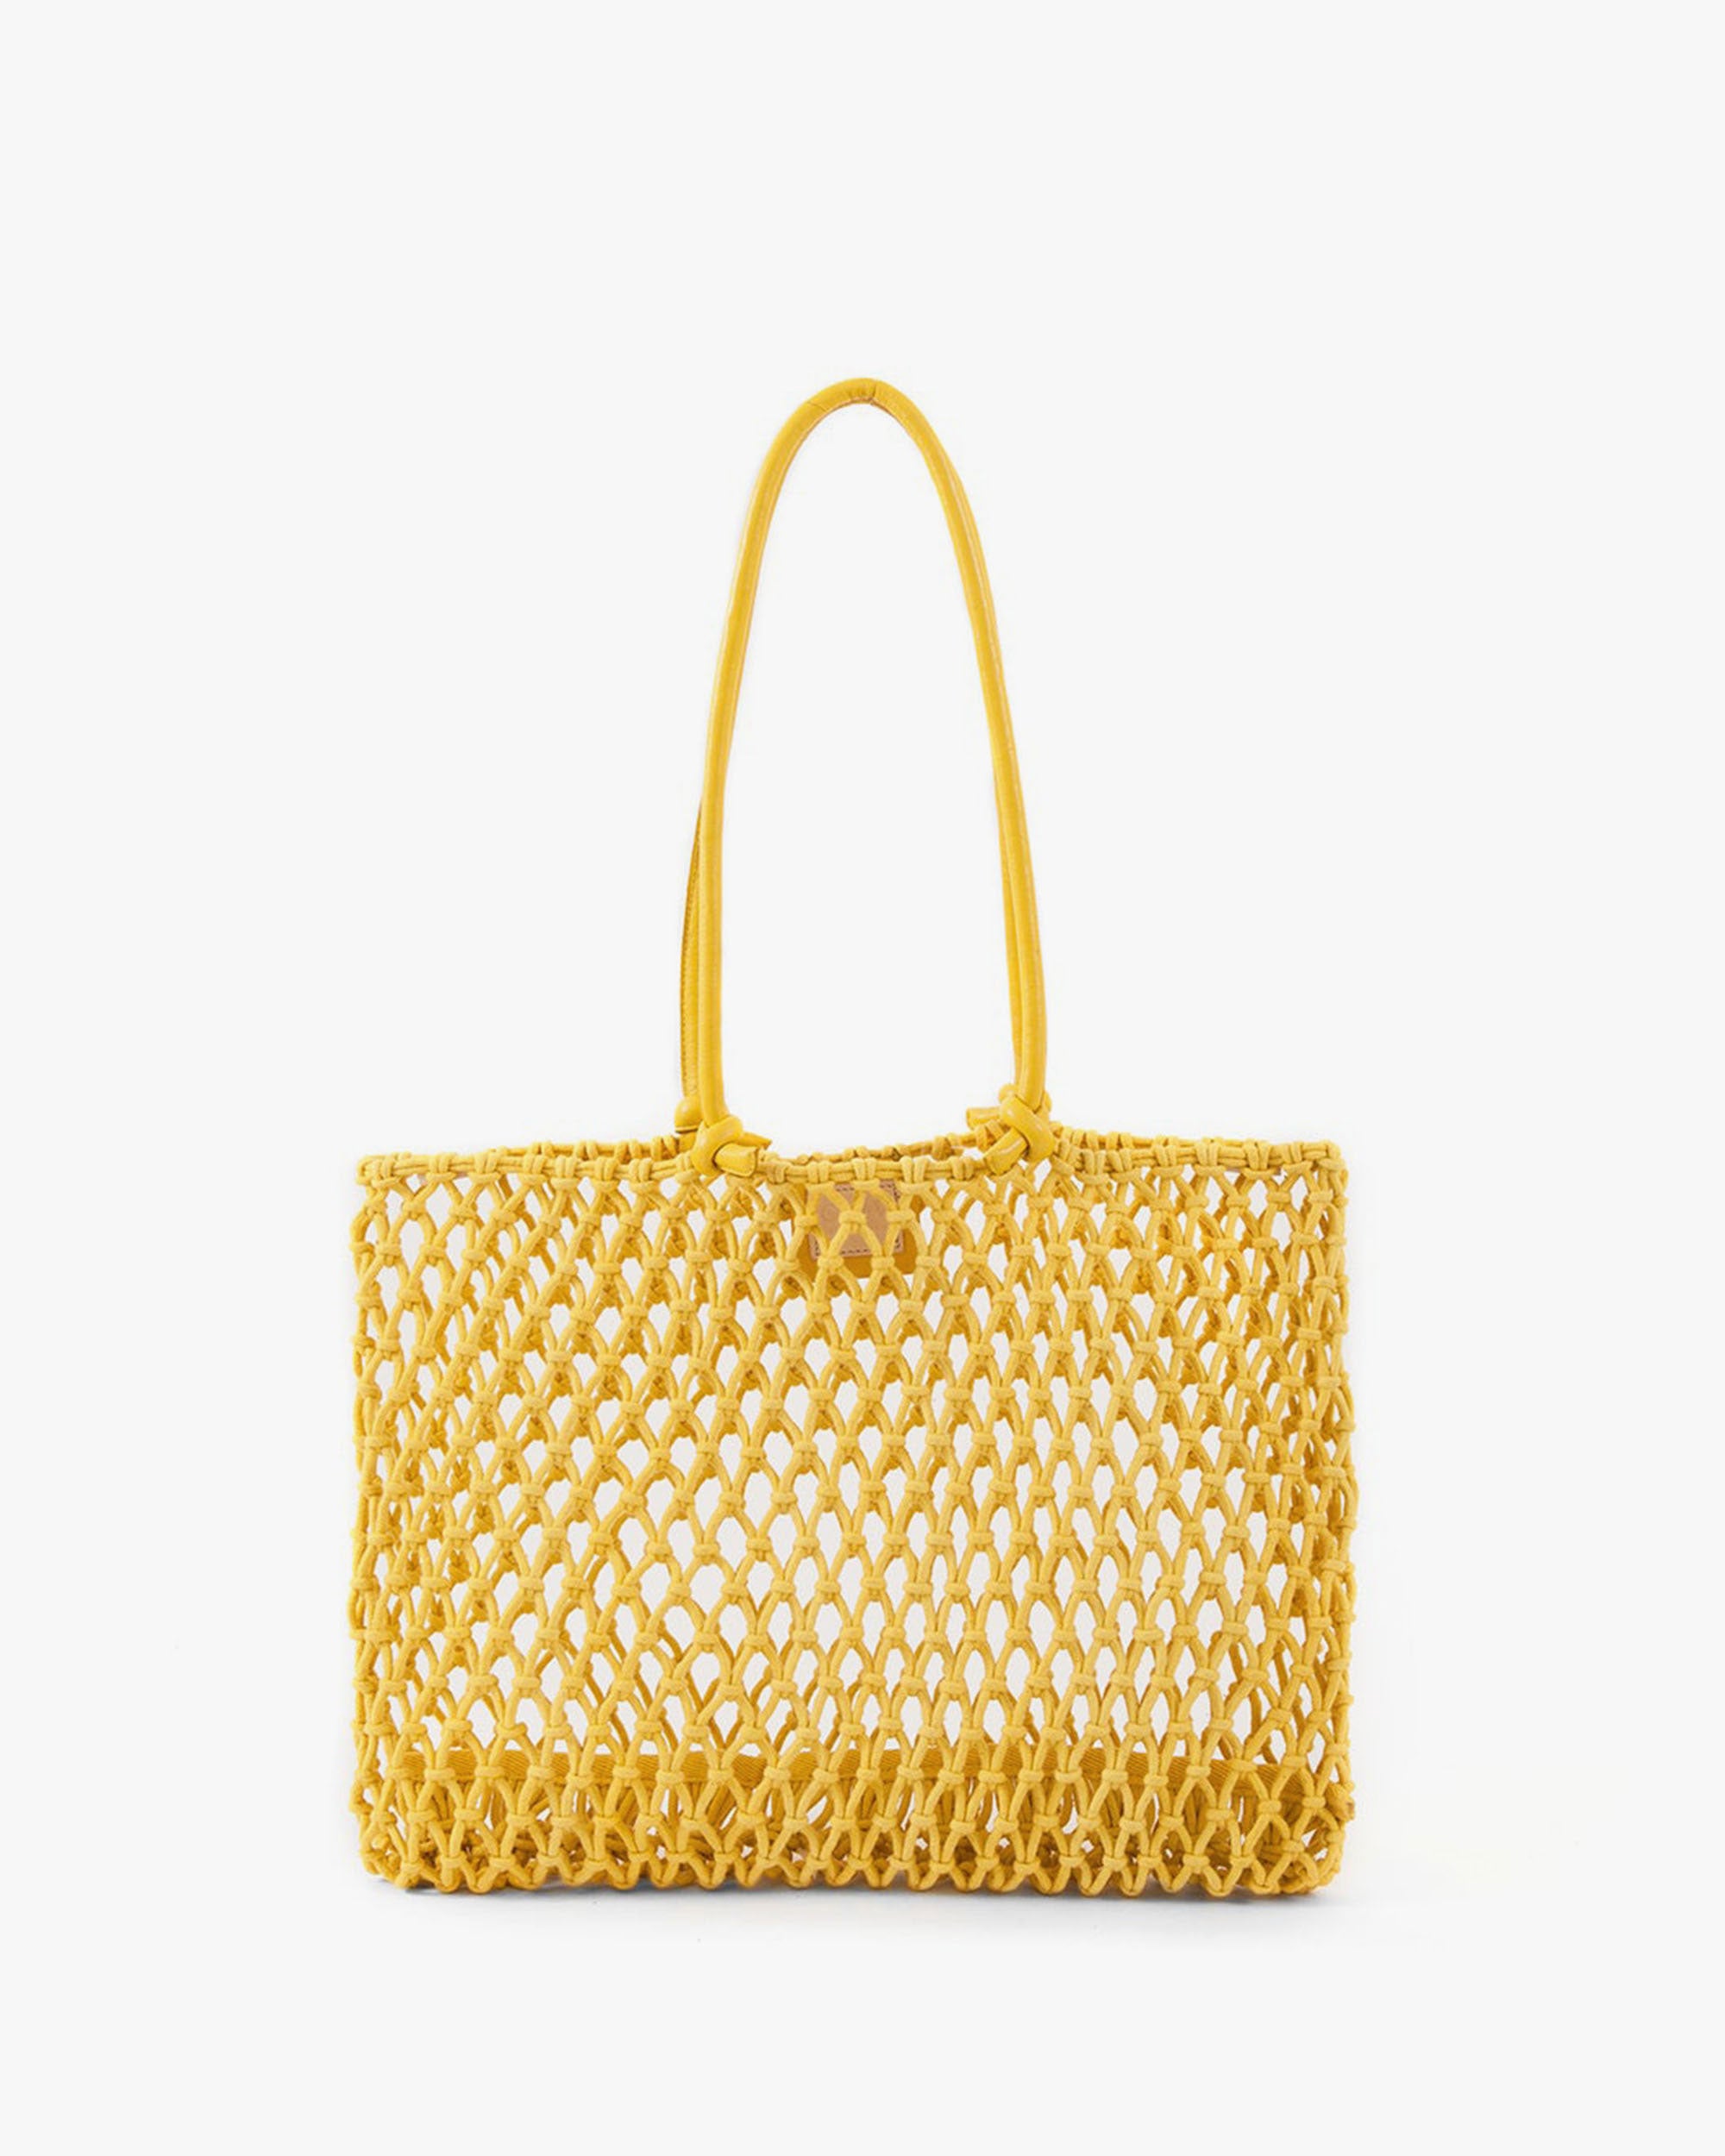 Merci cotton tote bag - Khaki & Yellow